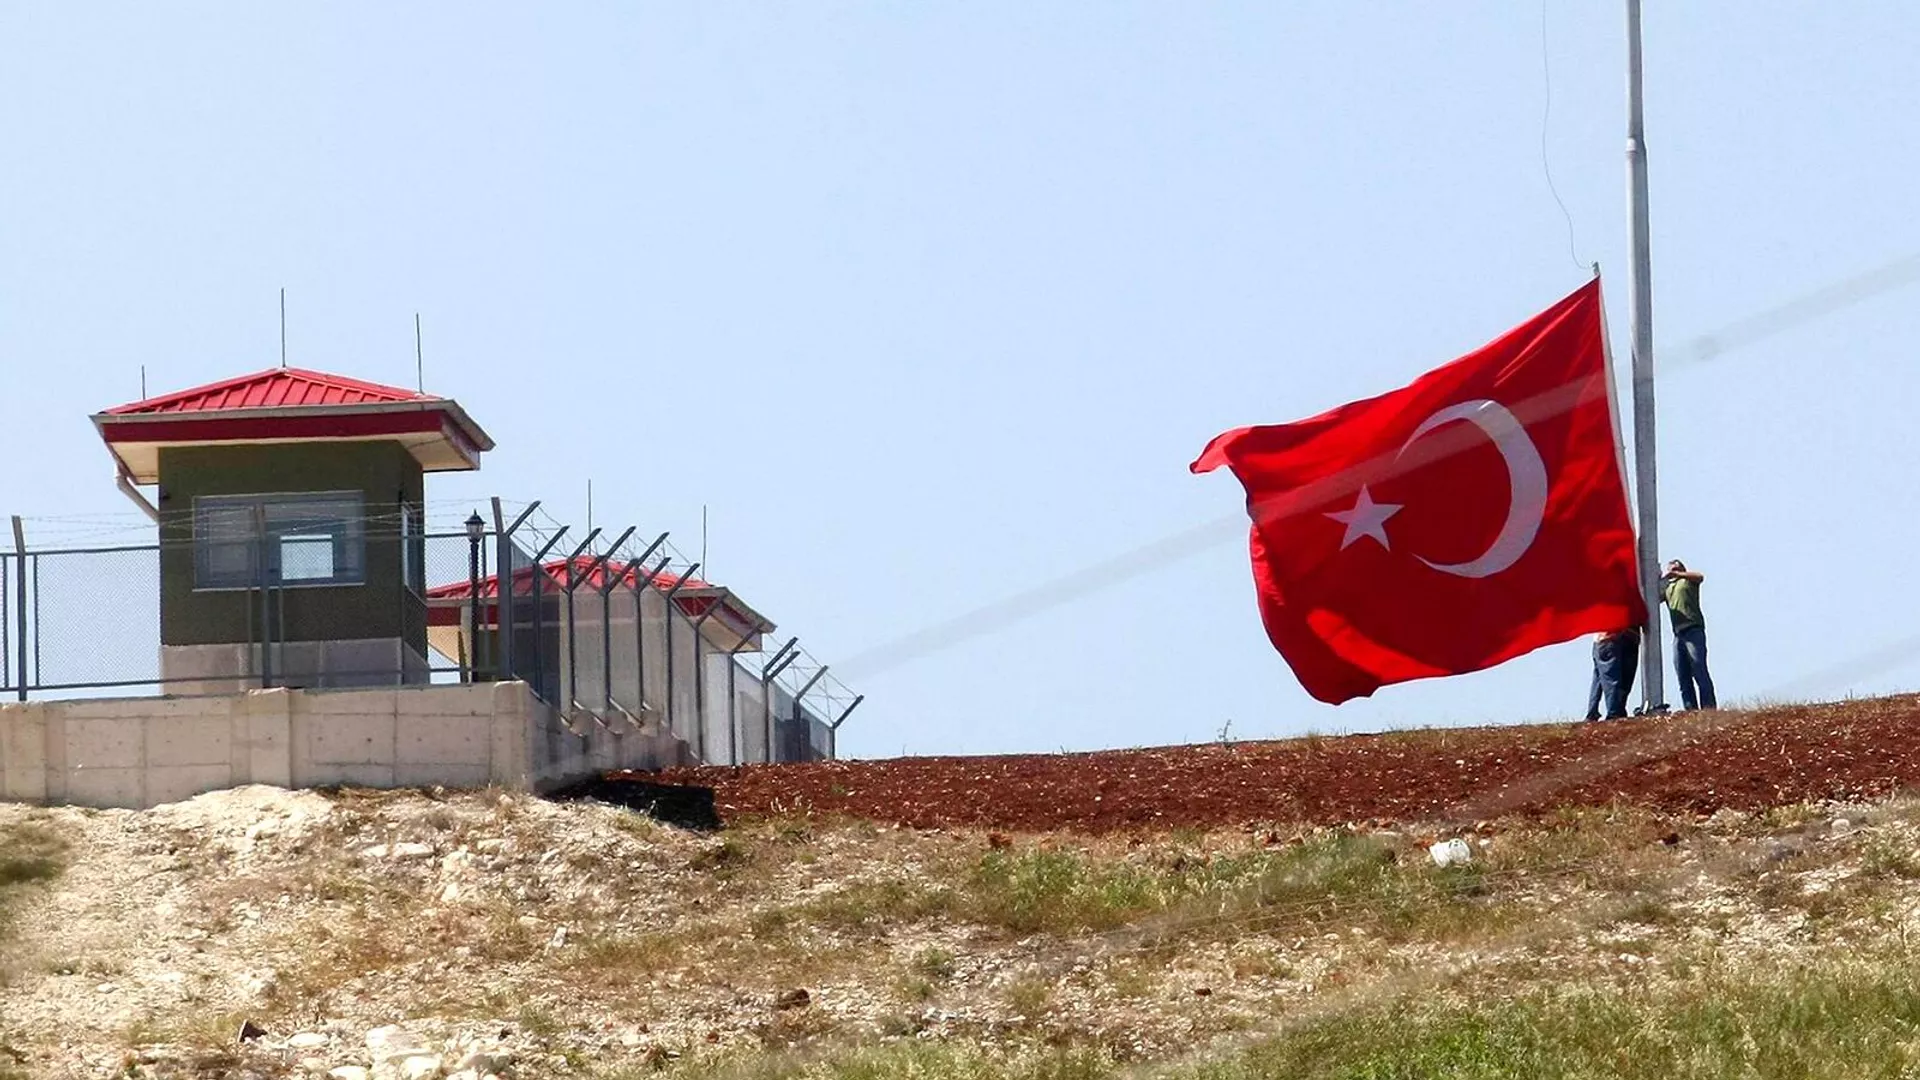 Թուրք-սիրիական սահմանի անցակետը գնդակոծվել է. տուժել է Թուրքիայի անվտանգության 3 աշխատակից